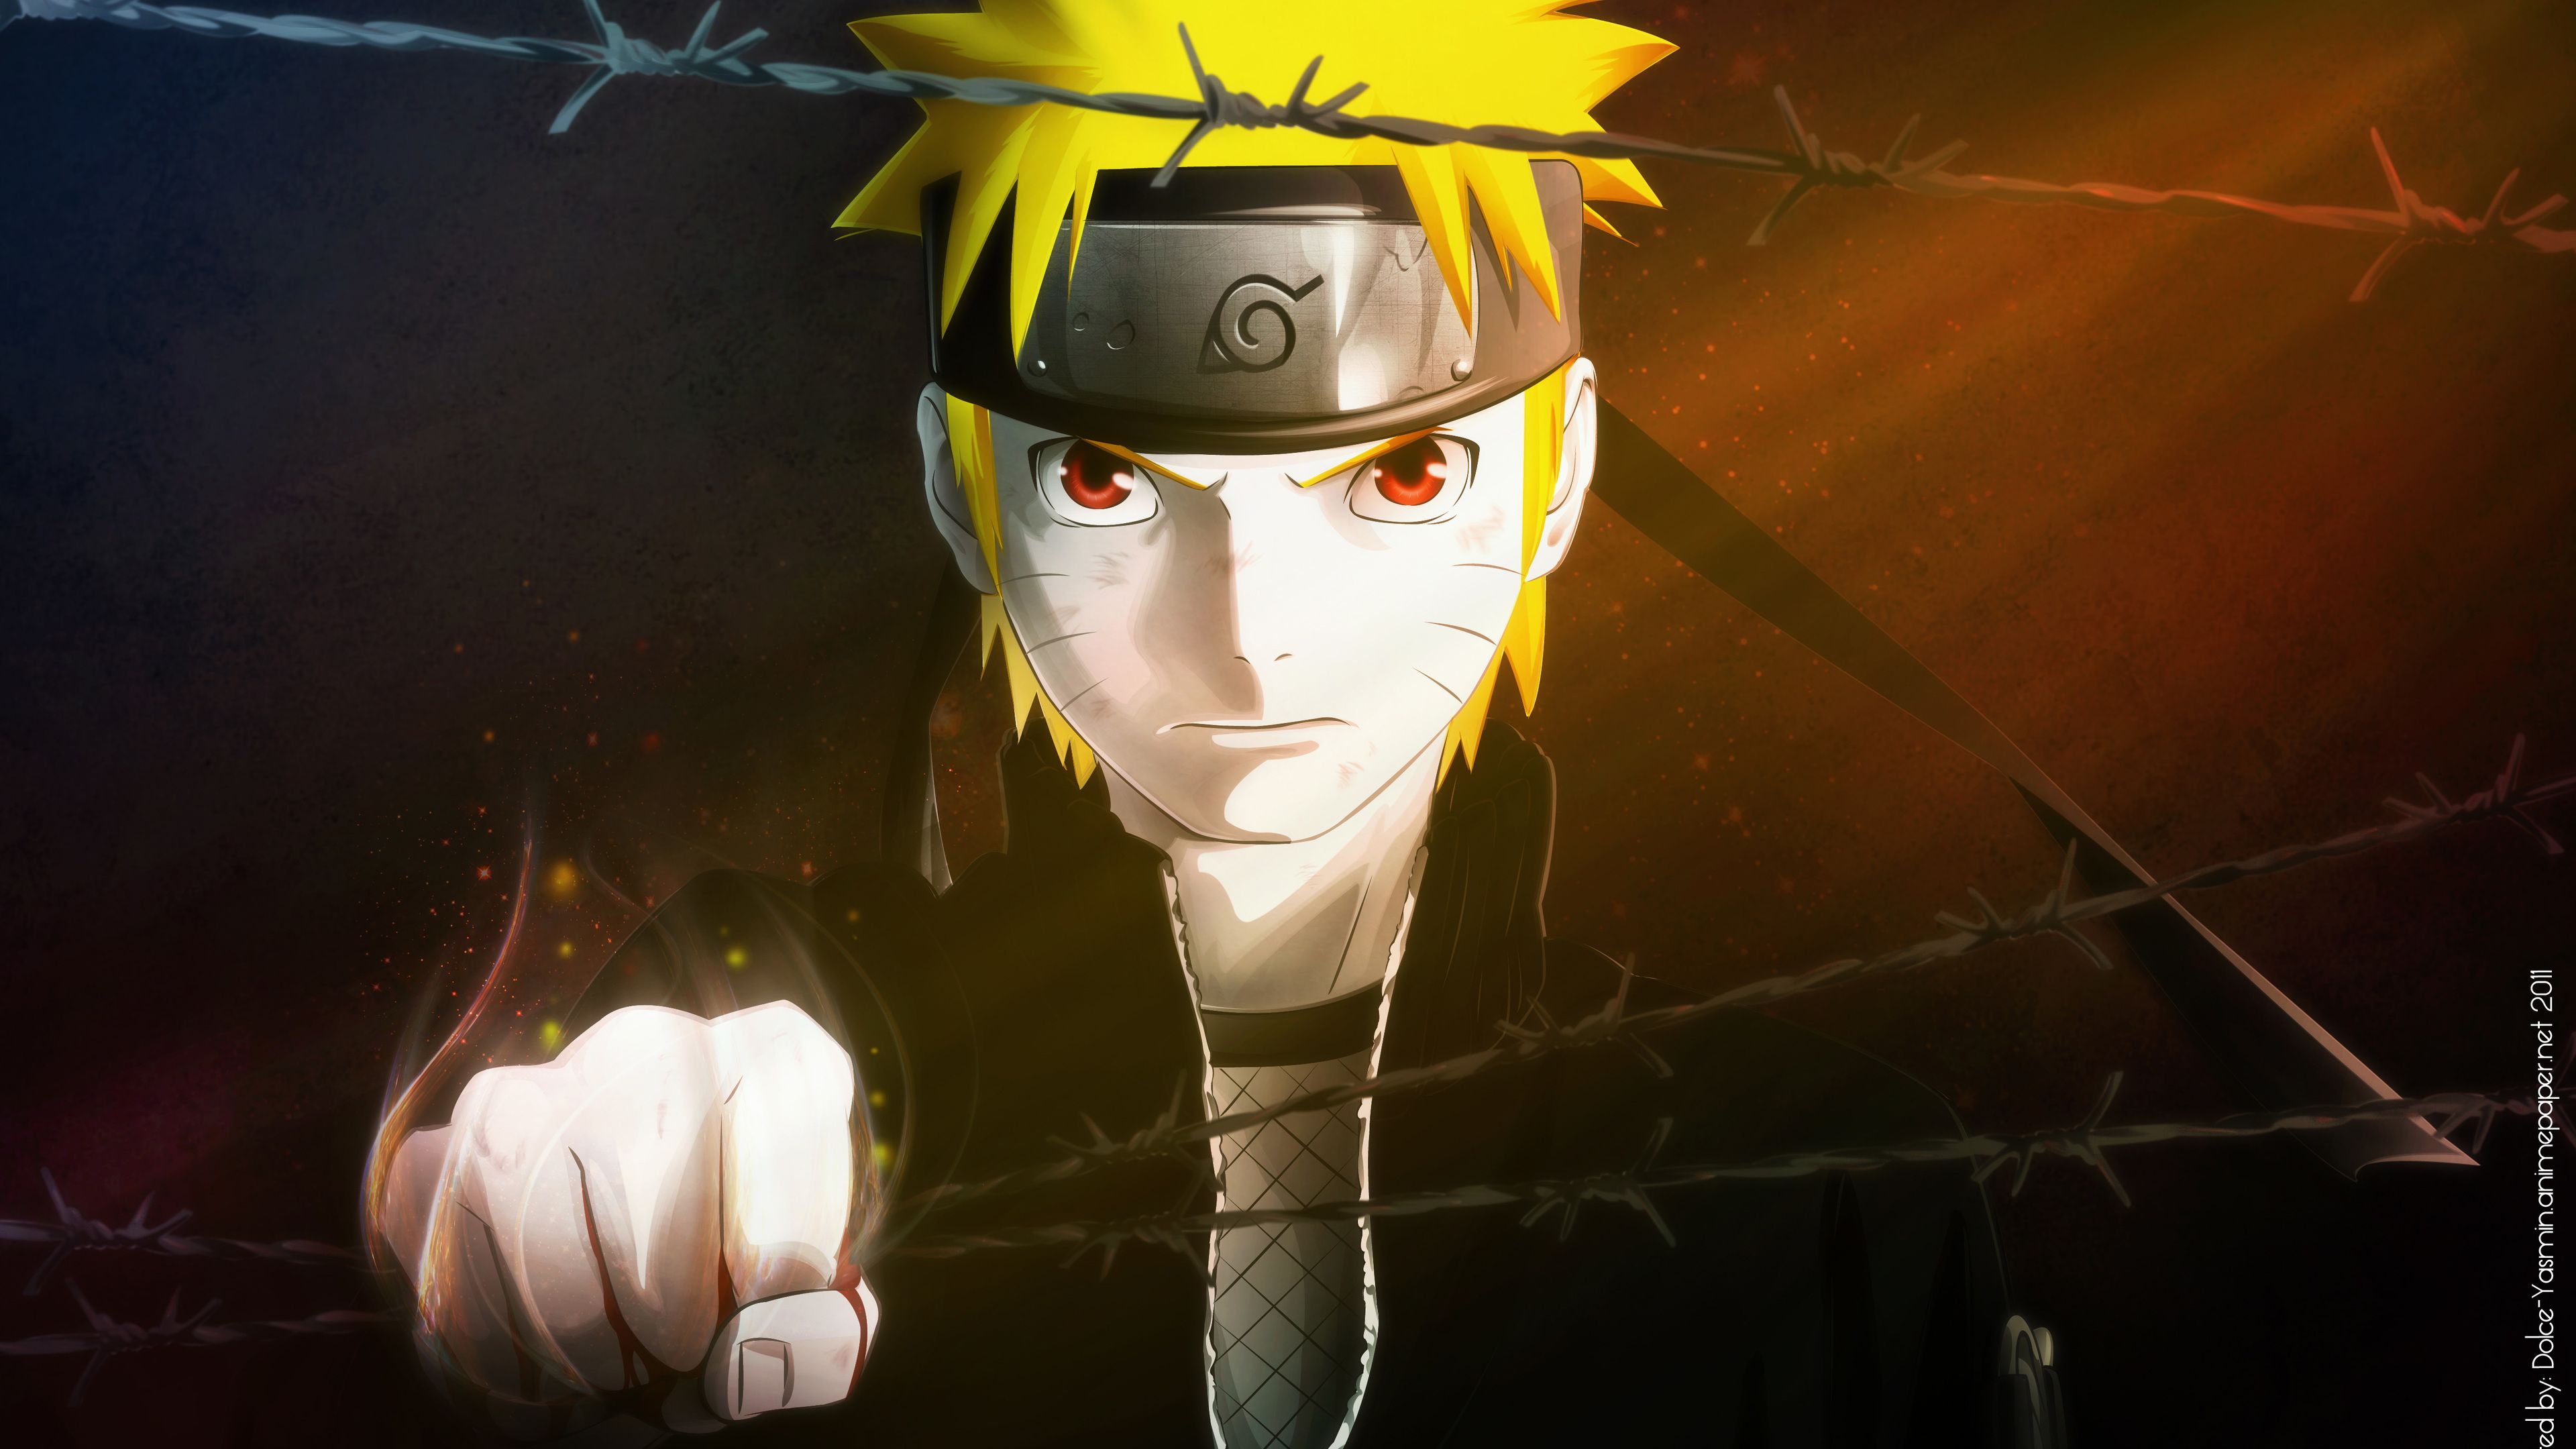 Naruto 4k hình nền sẽ làm bạn cảm thấy như đang sống trong thế giới Naruto. Những hình ảnh chân thực với màu sắc nổi bật và độ phân giải cao sẽ tạo ra trải nghiệm hoàn toàn mới cho bạn. Hãy tải hình nền Naruto 4K ngay hôm nay.